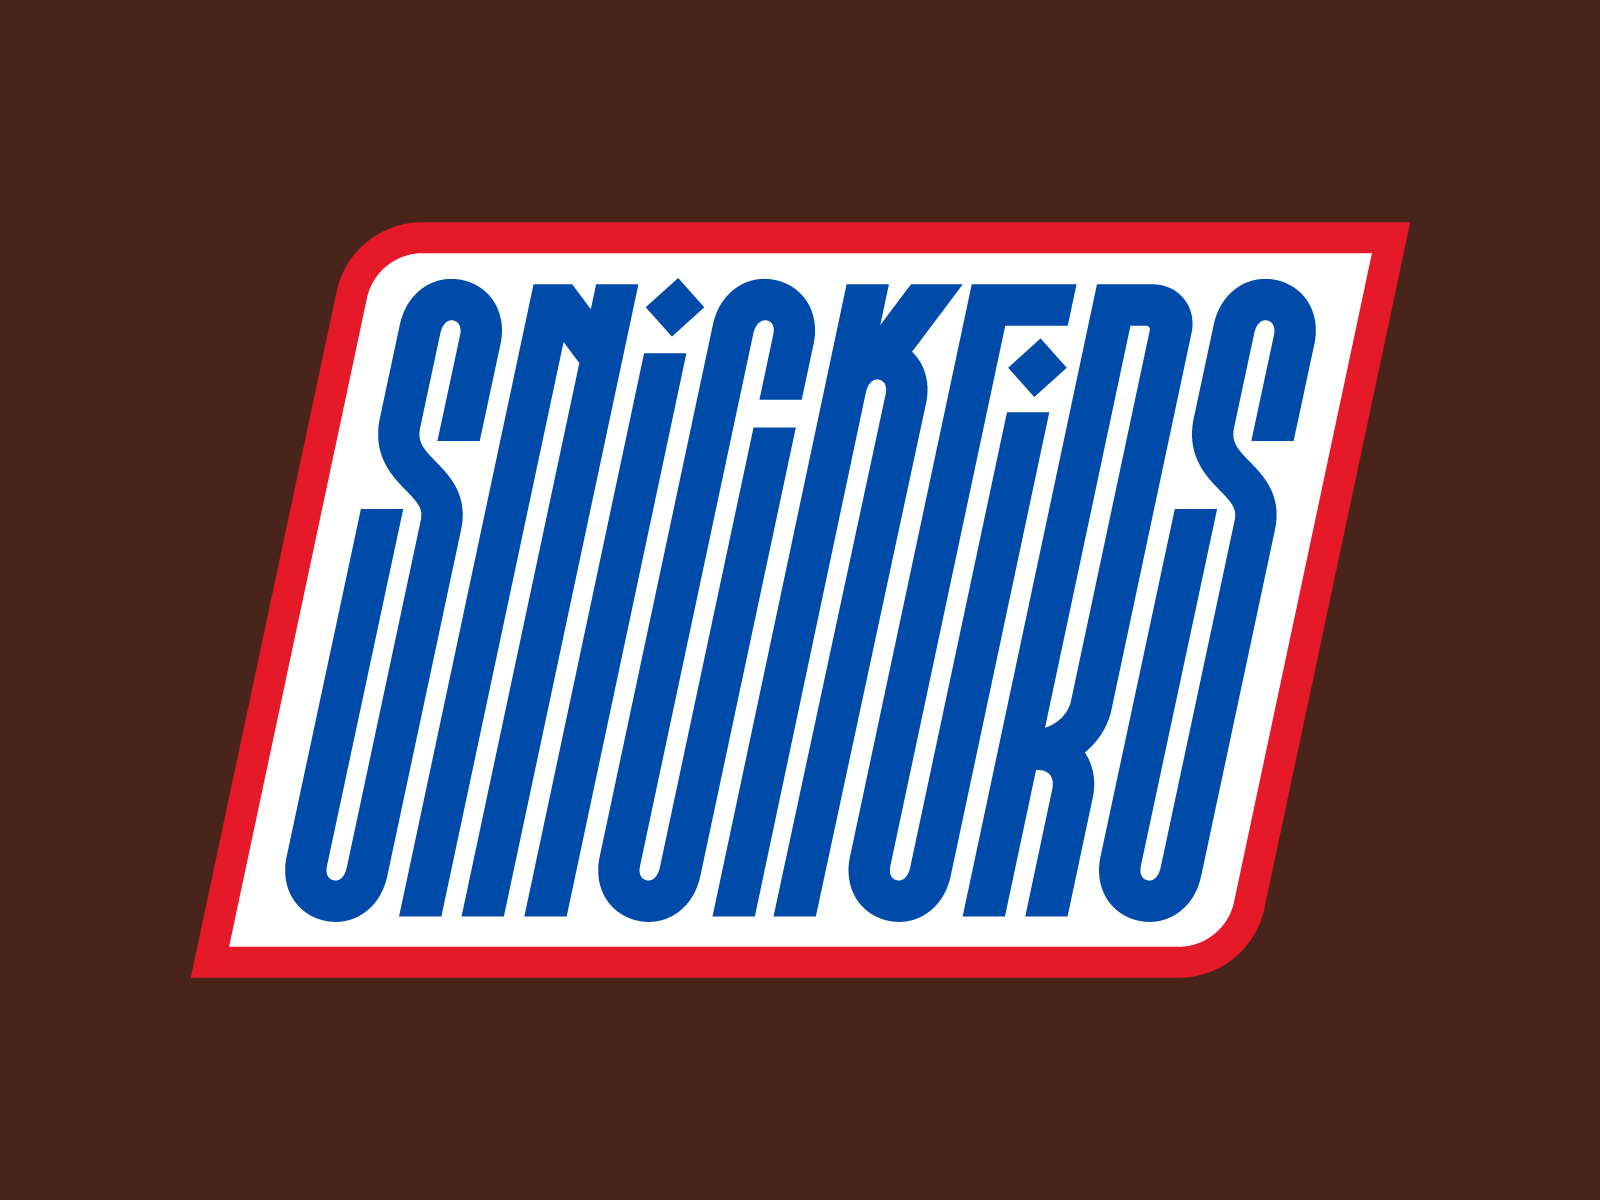 Snickers by Rafael Serra on Dribbble